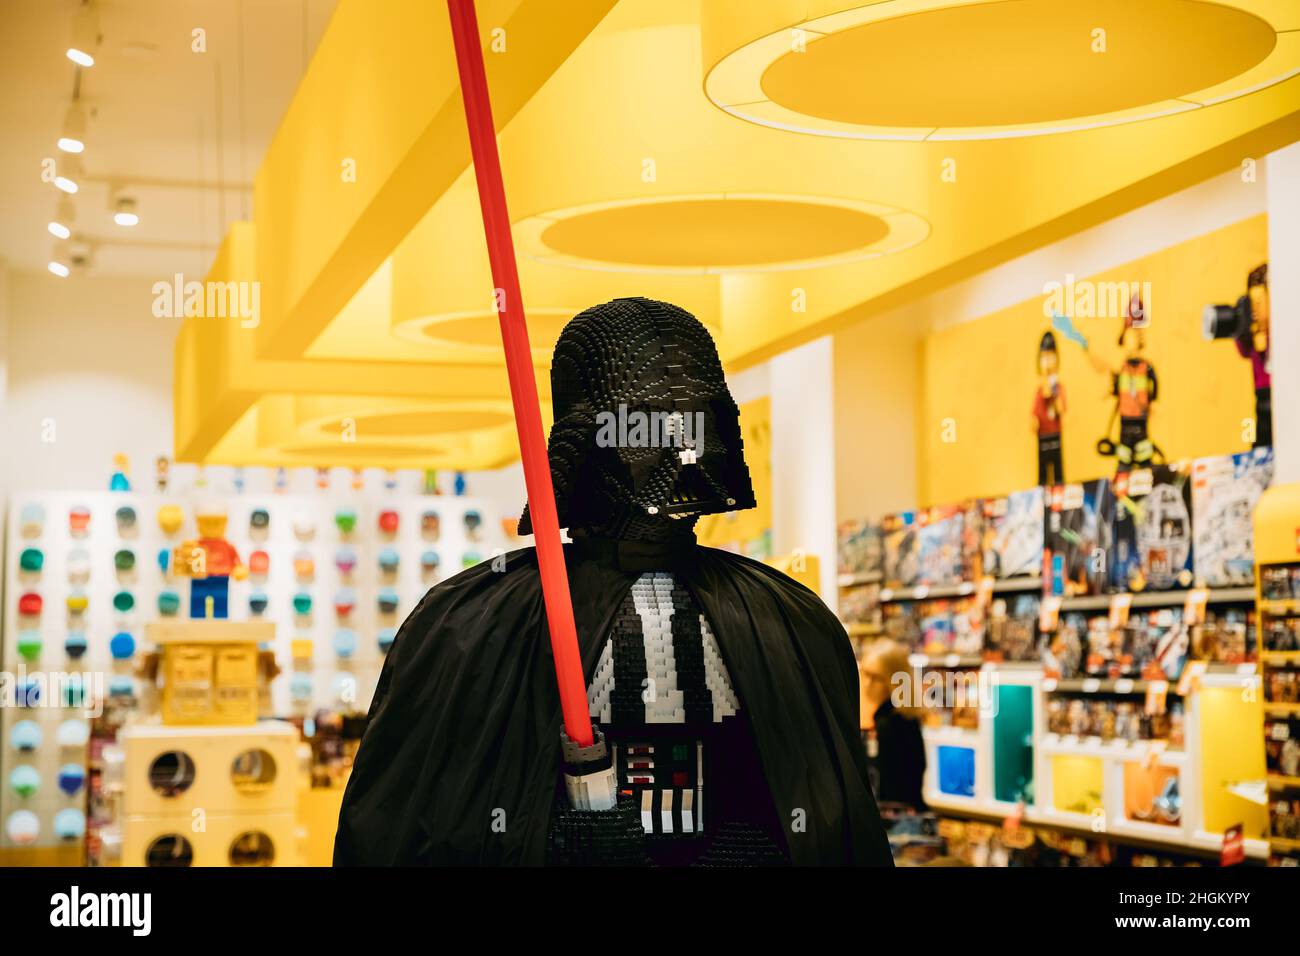 Statue de Darth Vader de Star Wars assemblée de Lego dans le magasin Lego Banque D'Images